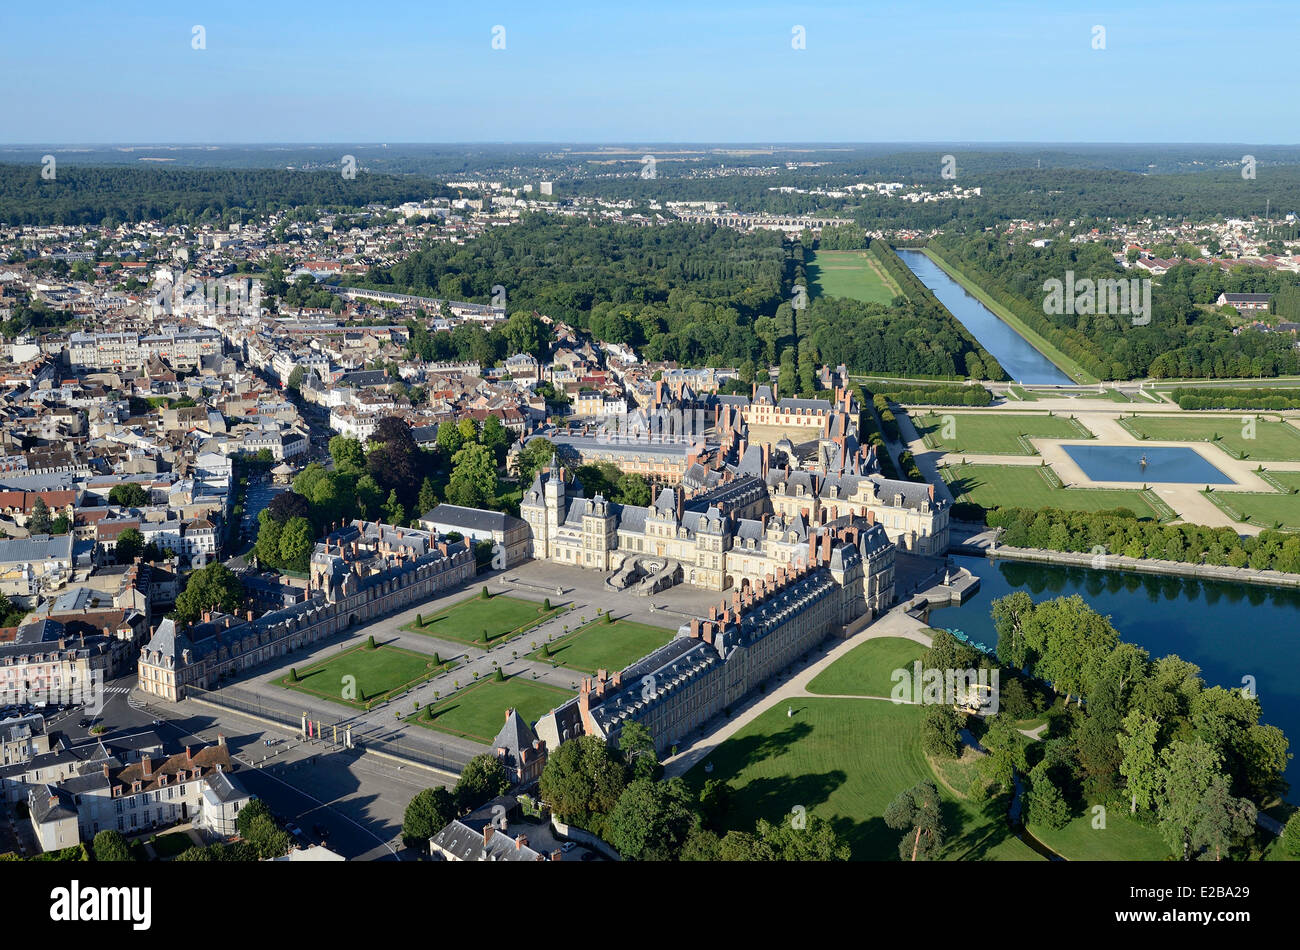 Francia, Seine et Marne, Fontainebleau, royal castle elencati come patrimonio mondiale dall' UNESCO, giardini da Le Notre (vista aerea) Foto Stock